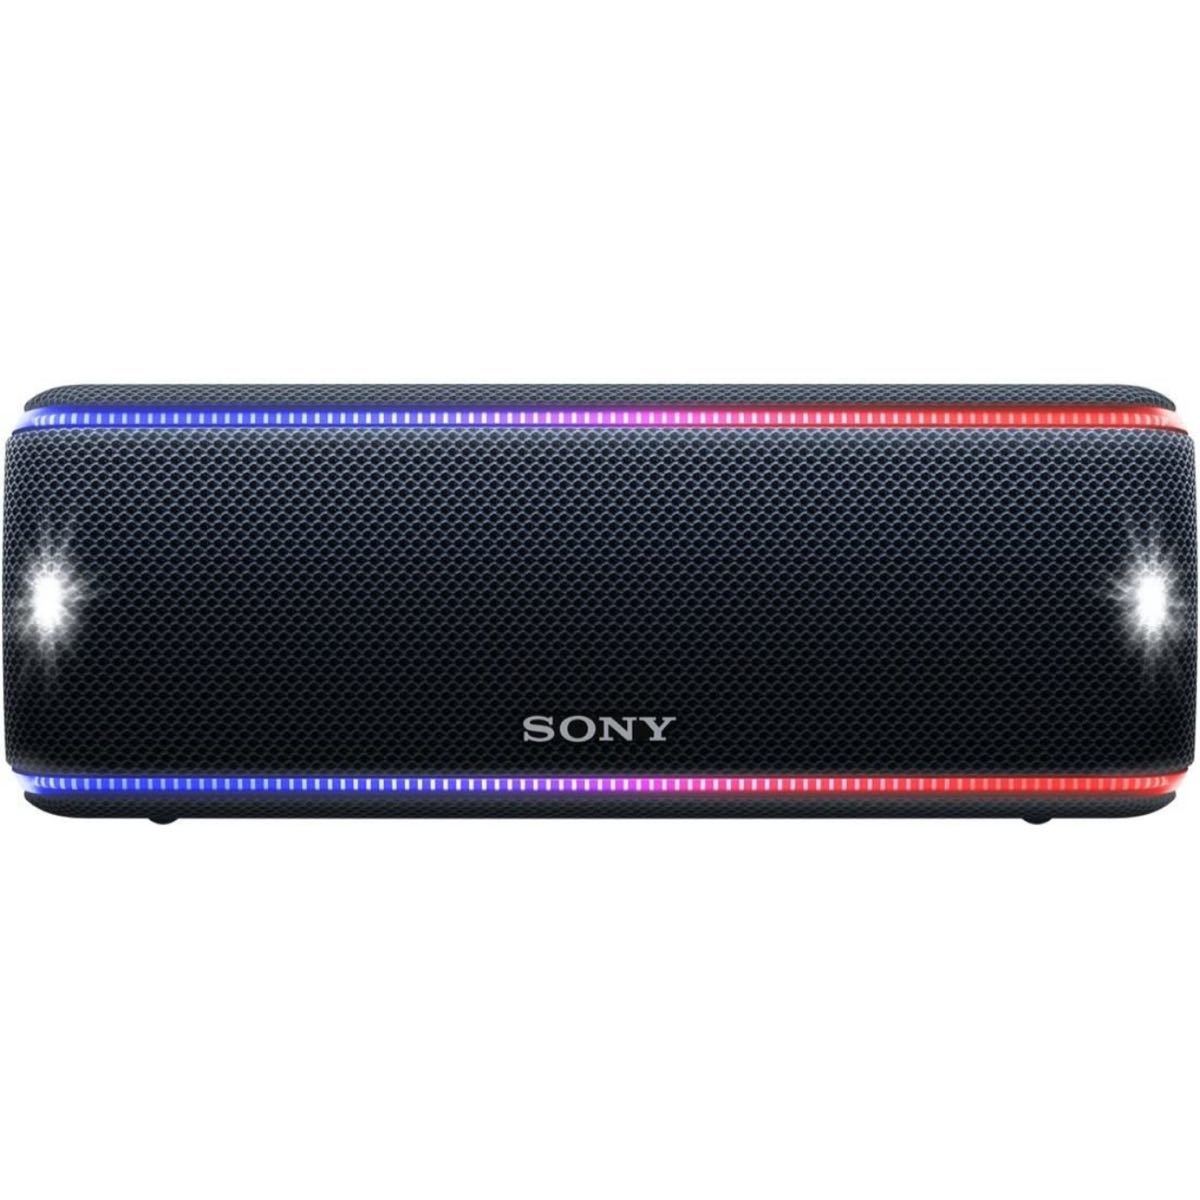 世界的に SONY ワイヤレスポータブルスピーカー Bluetooth スピーカー 重低音 高音質 - スマホ対応スピーカー -  reachahand.org